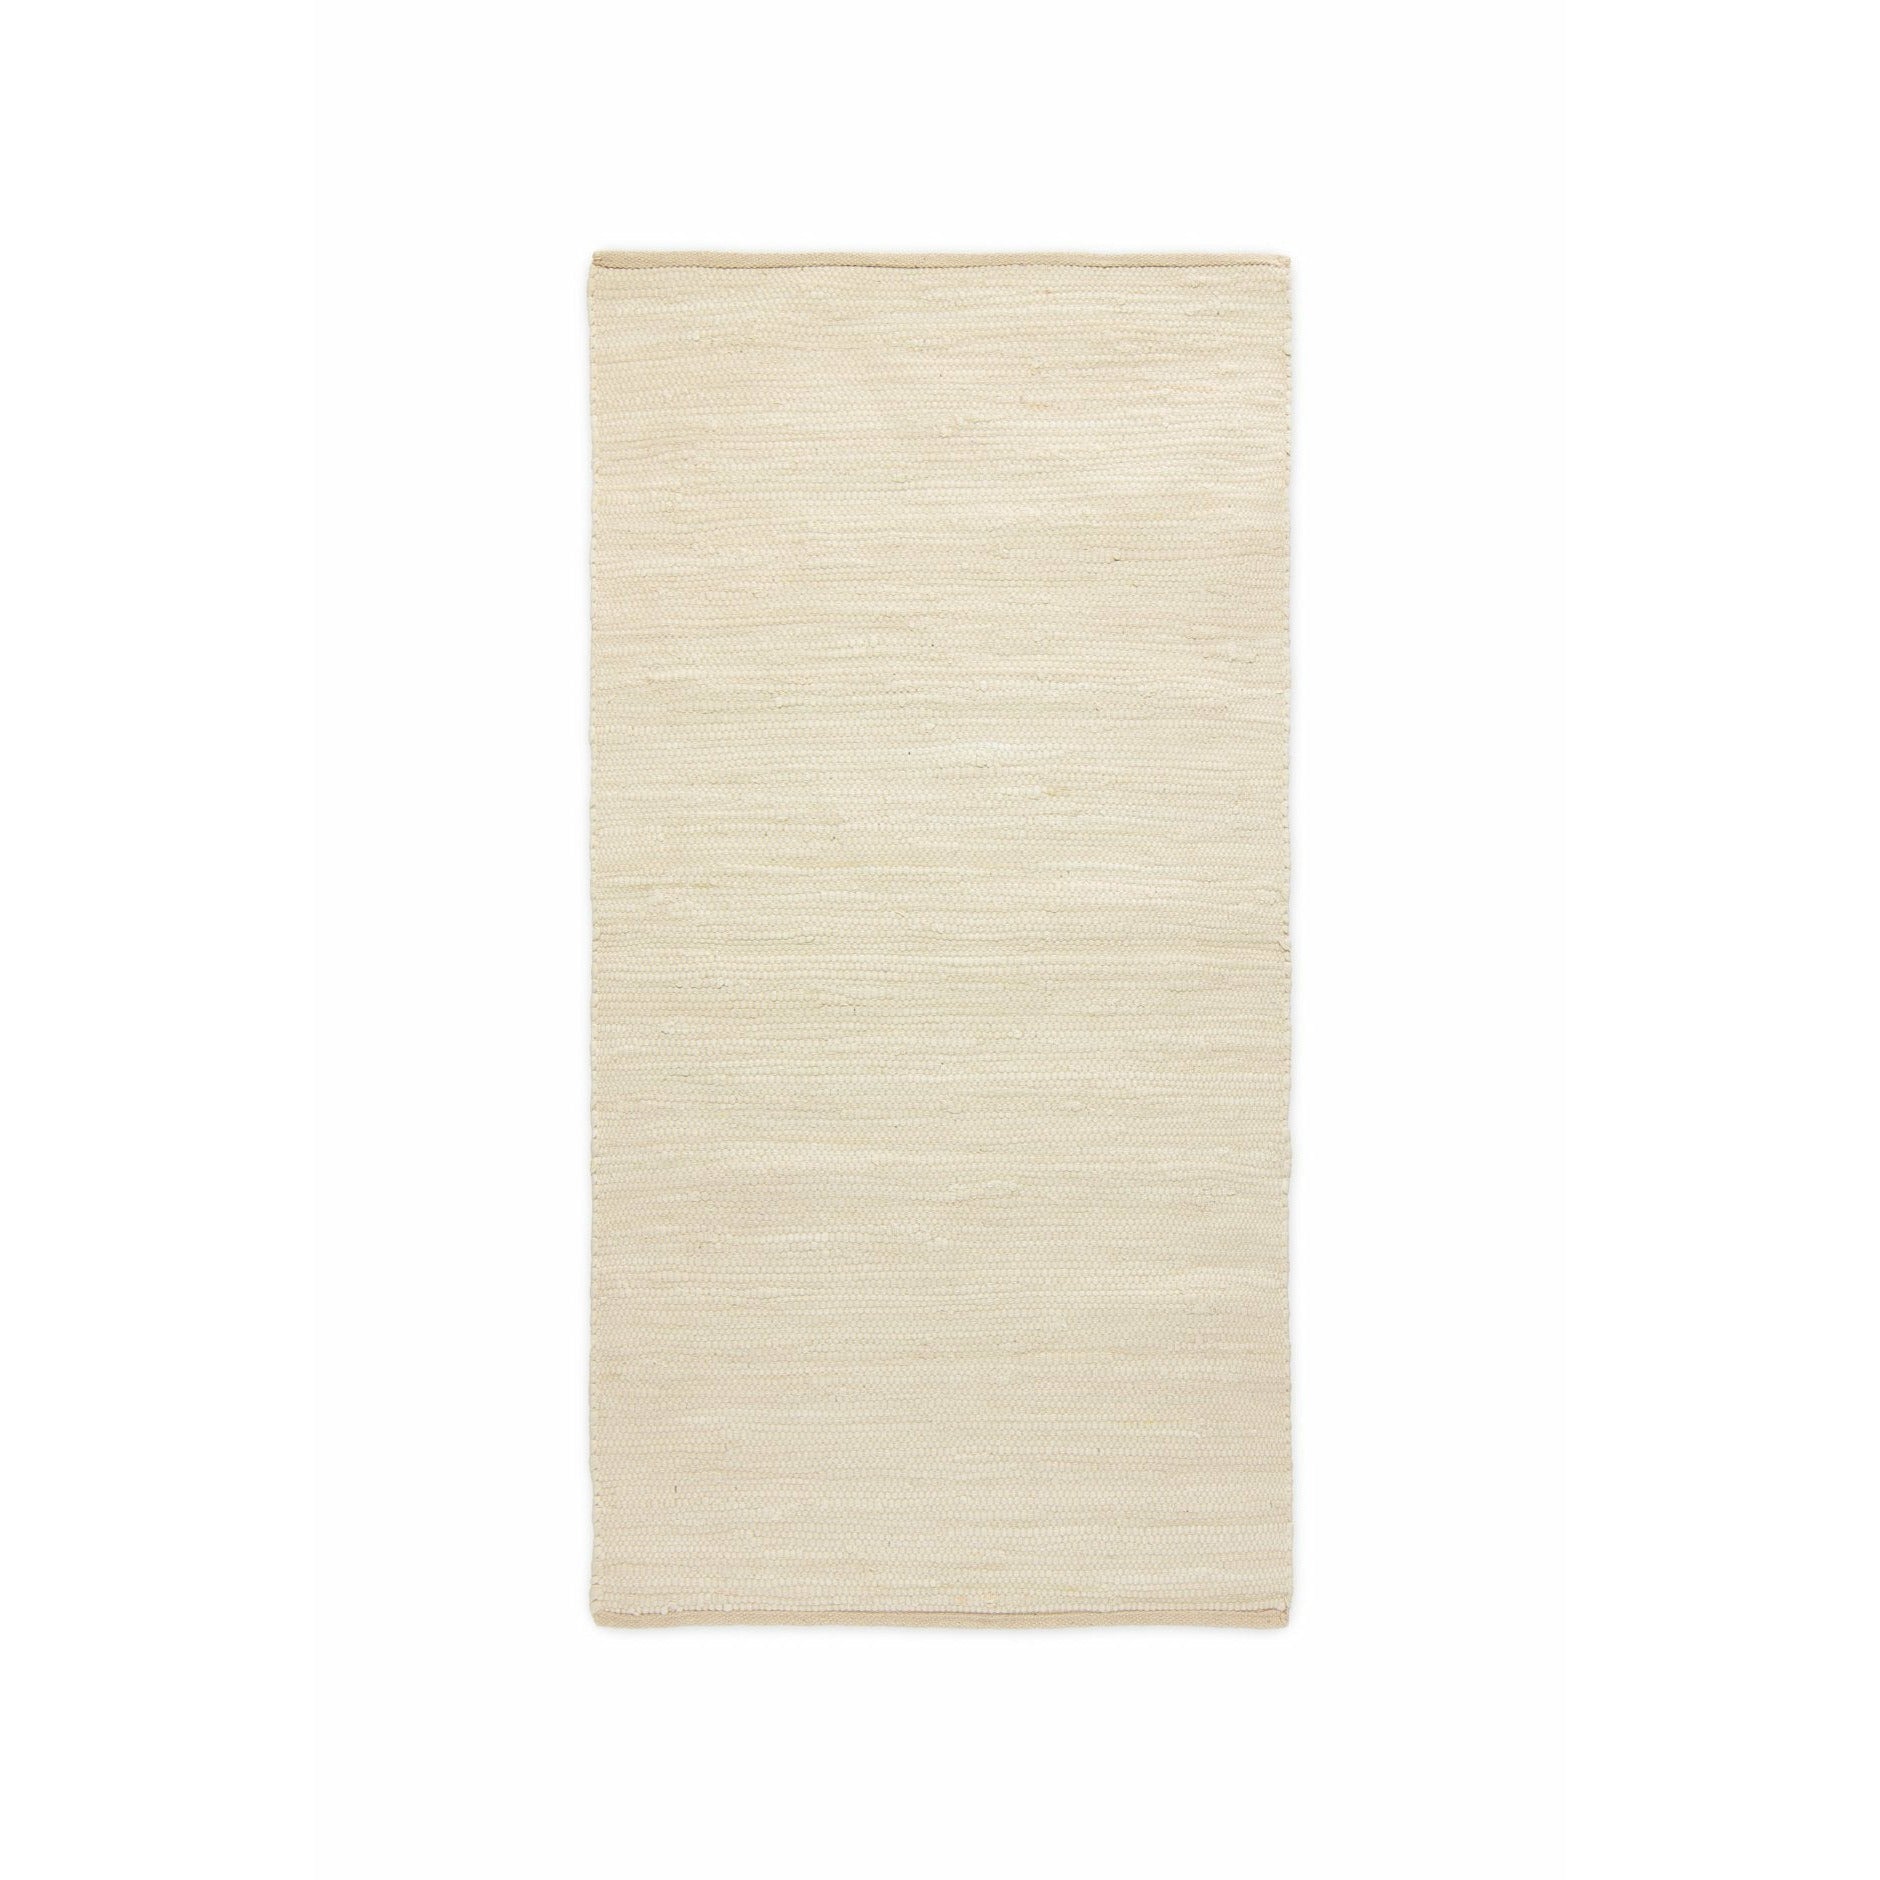 Rug Solid Baumwollteppich Wüste Weiß, 60 X 90 Cm